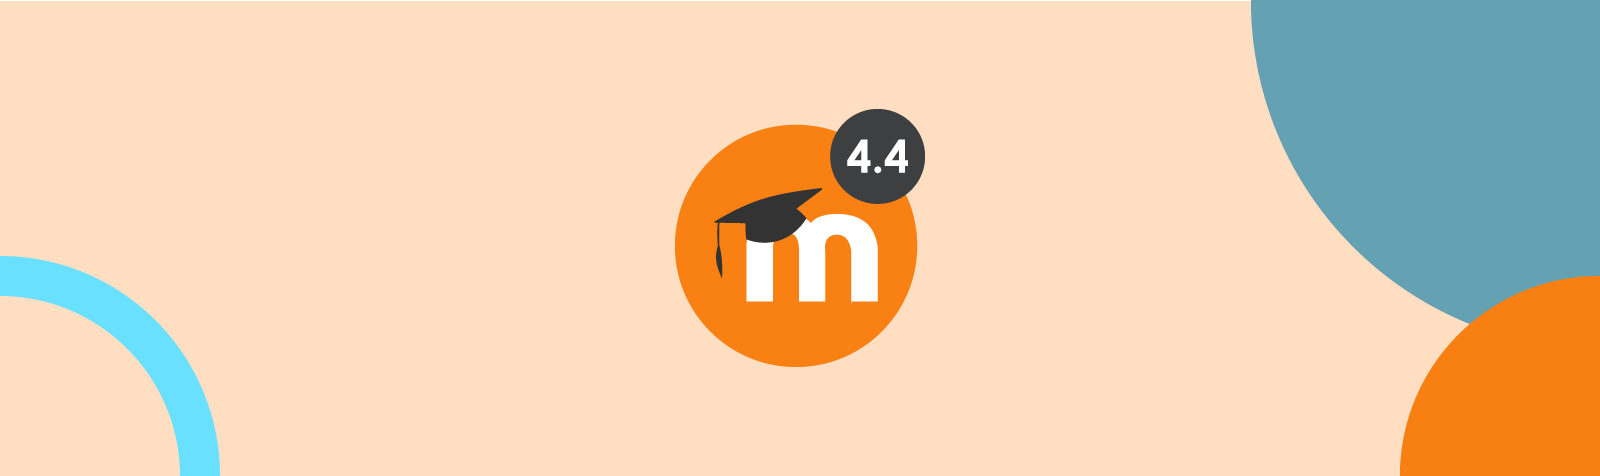 Nuevas funcionalidades de Moodle 4.4, la más reciente versión del LMS más usado del mundo